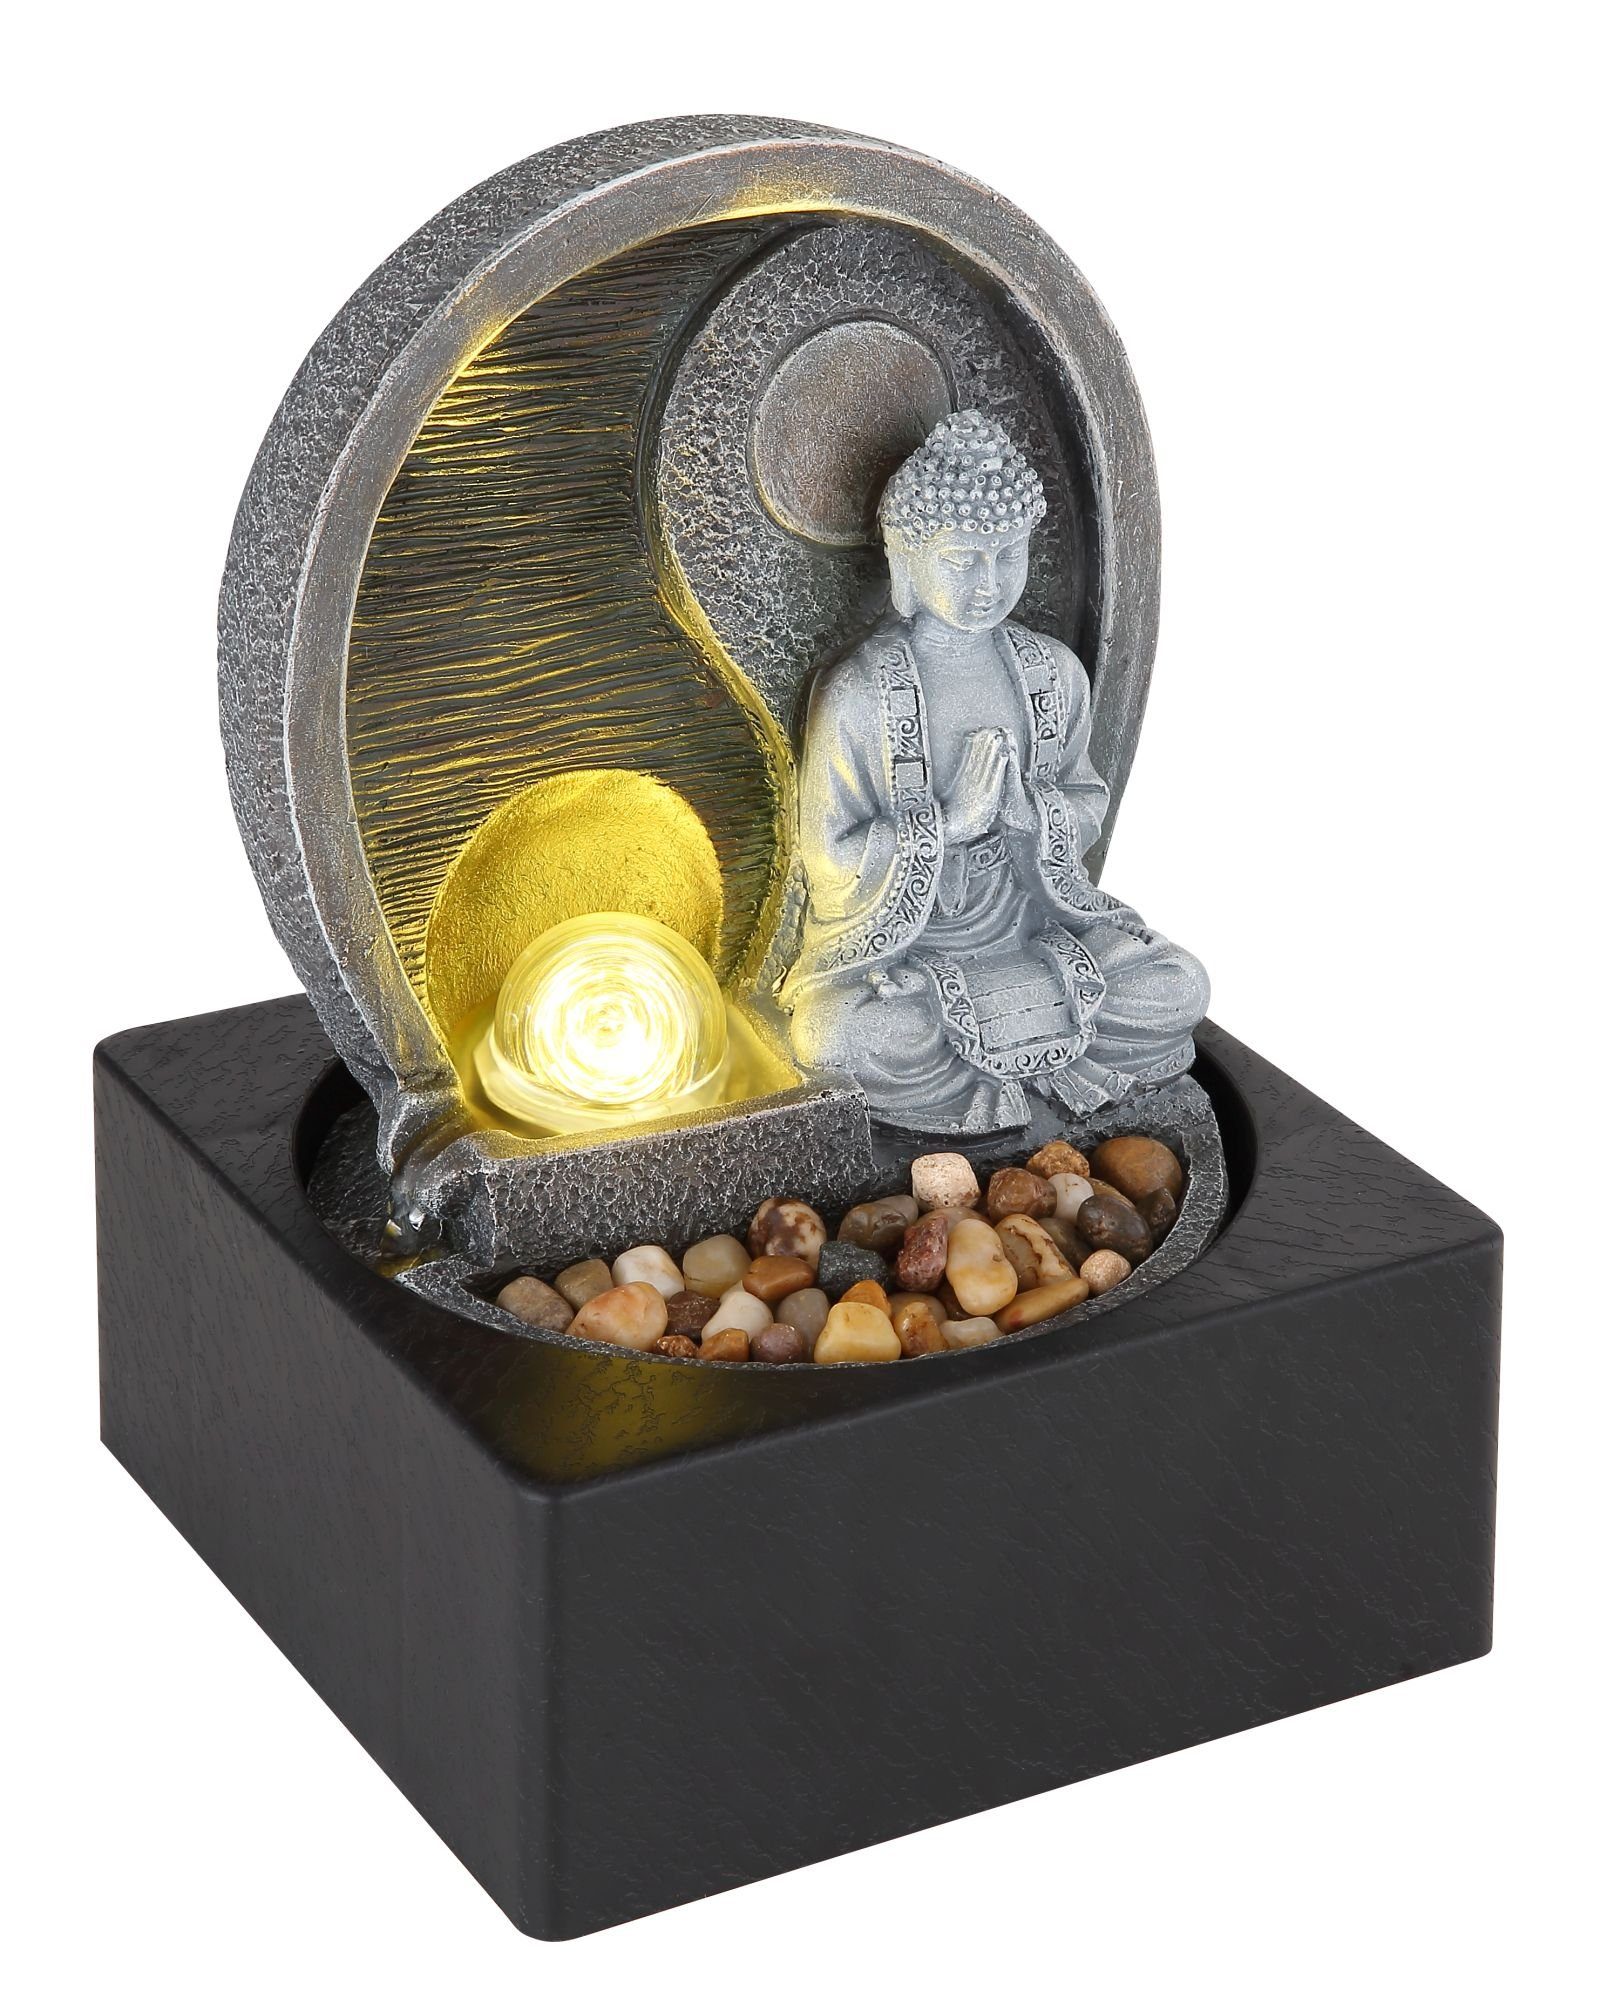 GLOBO LEUCHTEN Globo Tischleuchte Globo LED Tischleuchte Tischbrunnen mit Licht Pumpe Buddha grau